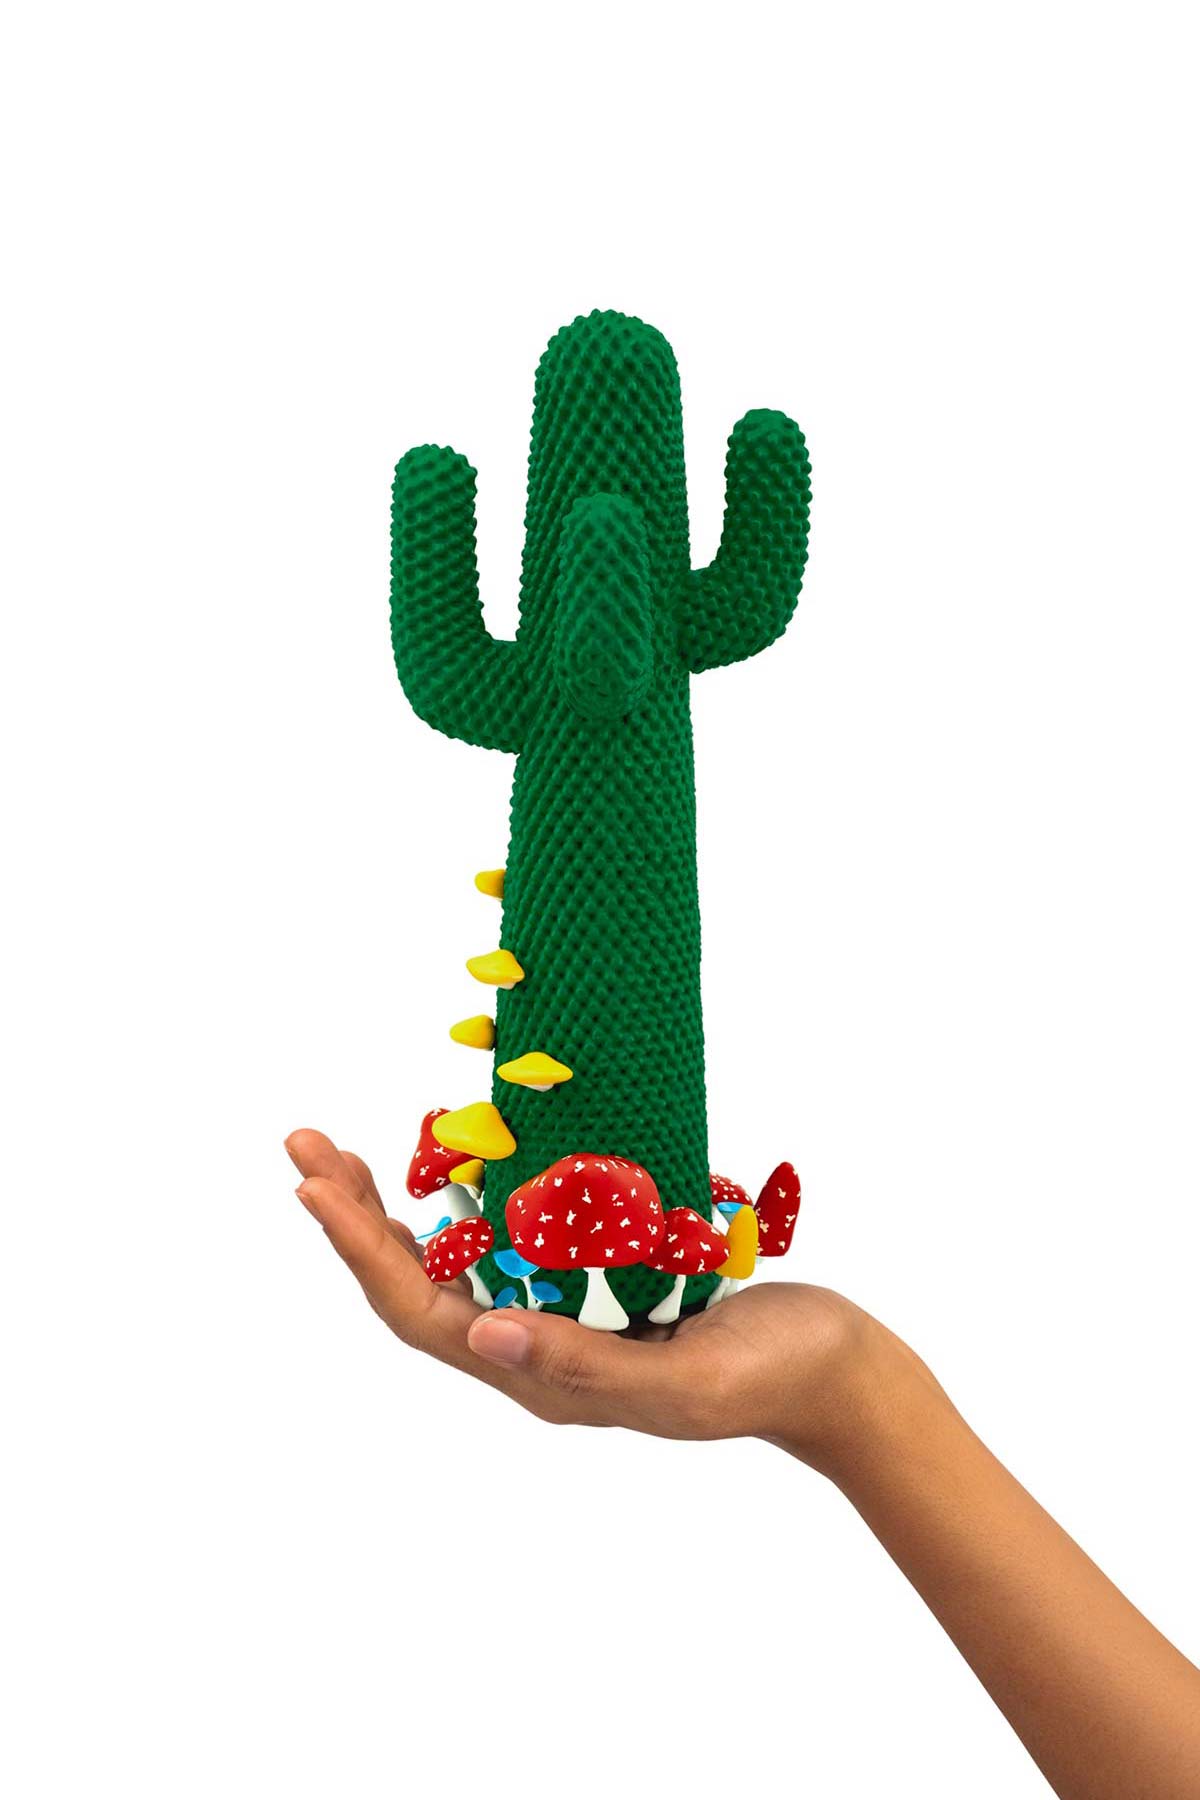 Guframini Cactus® by Gufram, design Drocco/Mello